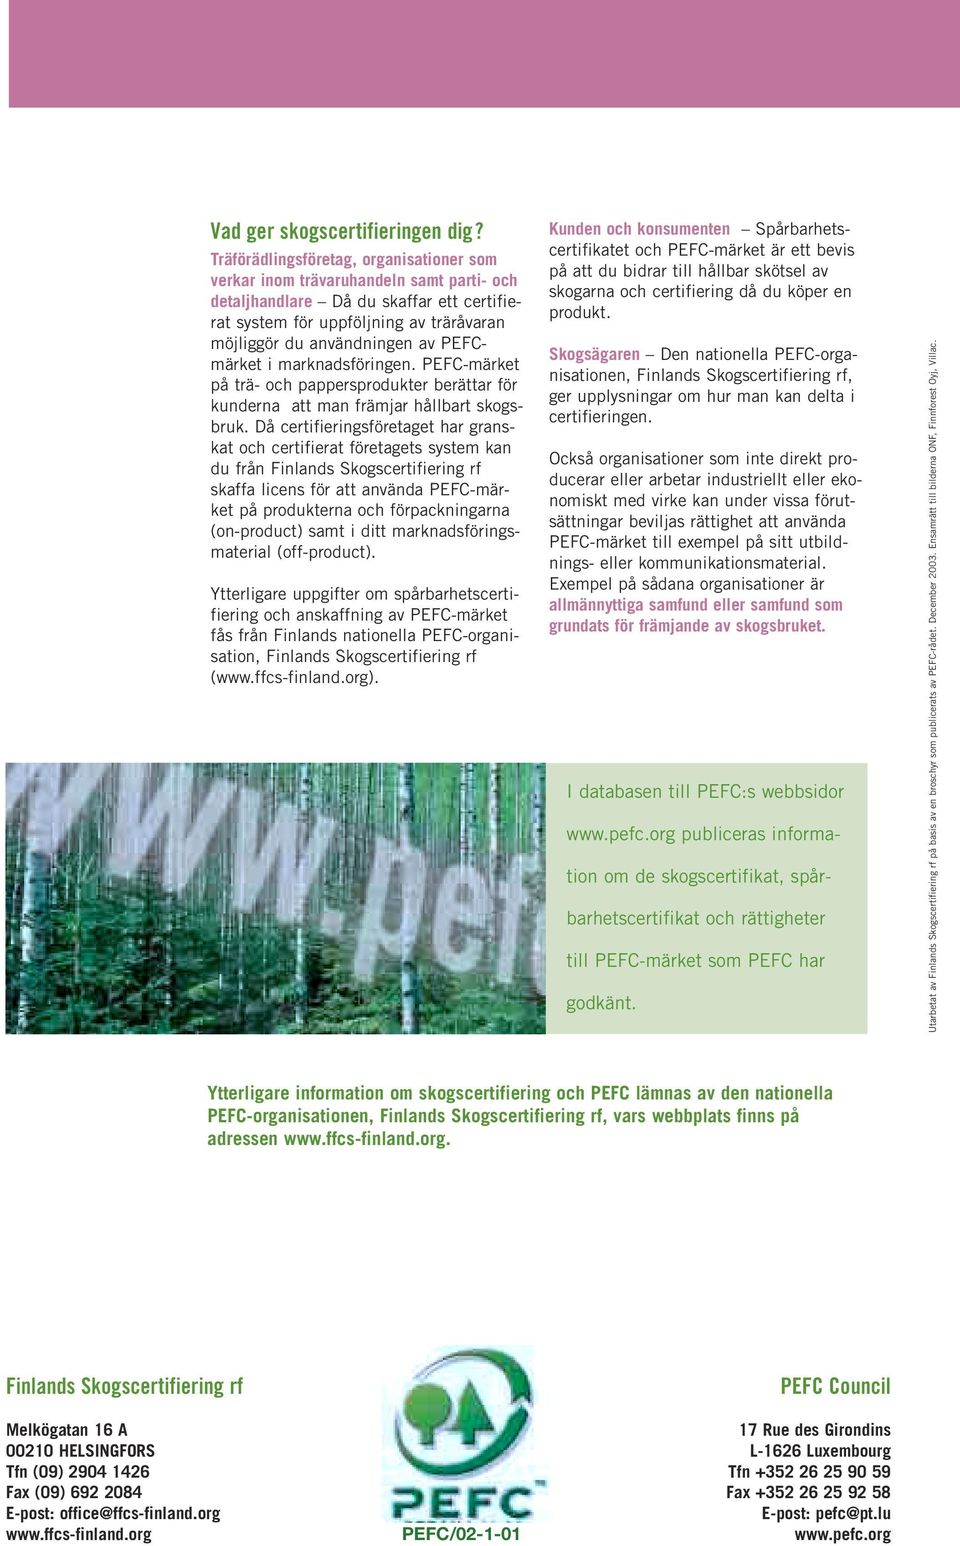 PEFCmärket i marknadsföringen. PEFC-märket på trä- och pappersprodukter berättar för kunderna att man främjar hållbart skogsbruk.